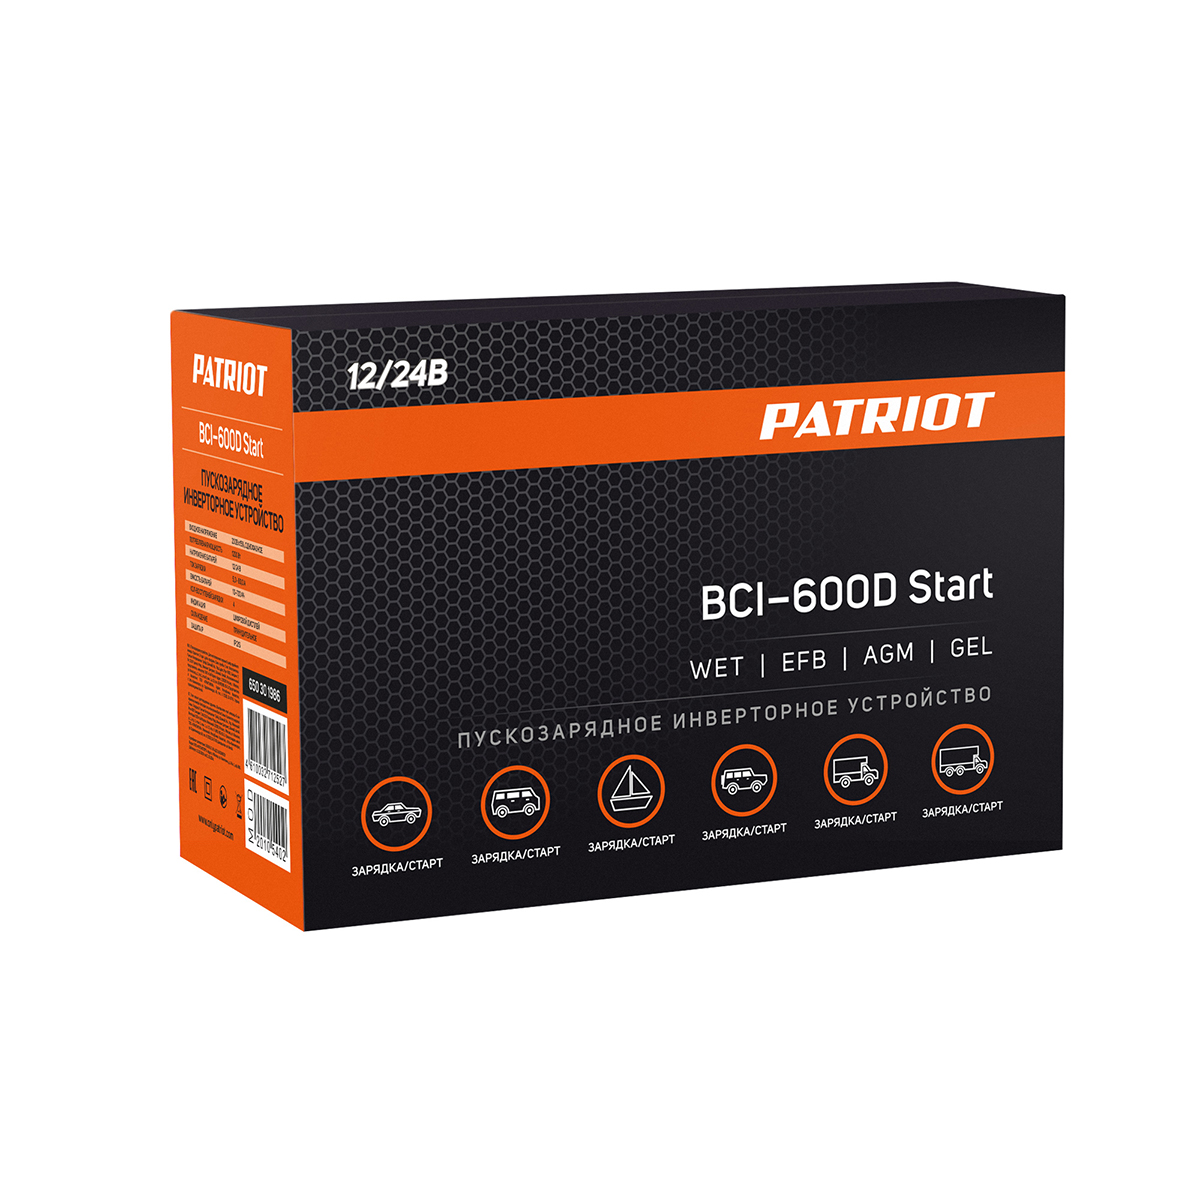 Пускозарядное устройство инверторное bci-600d-start (1/3) "patriot" 650301986